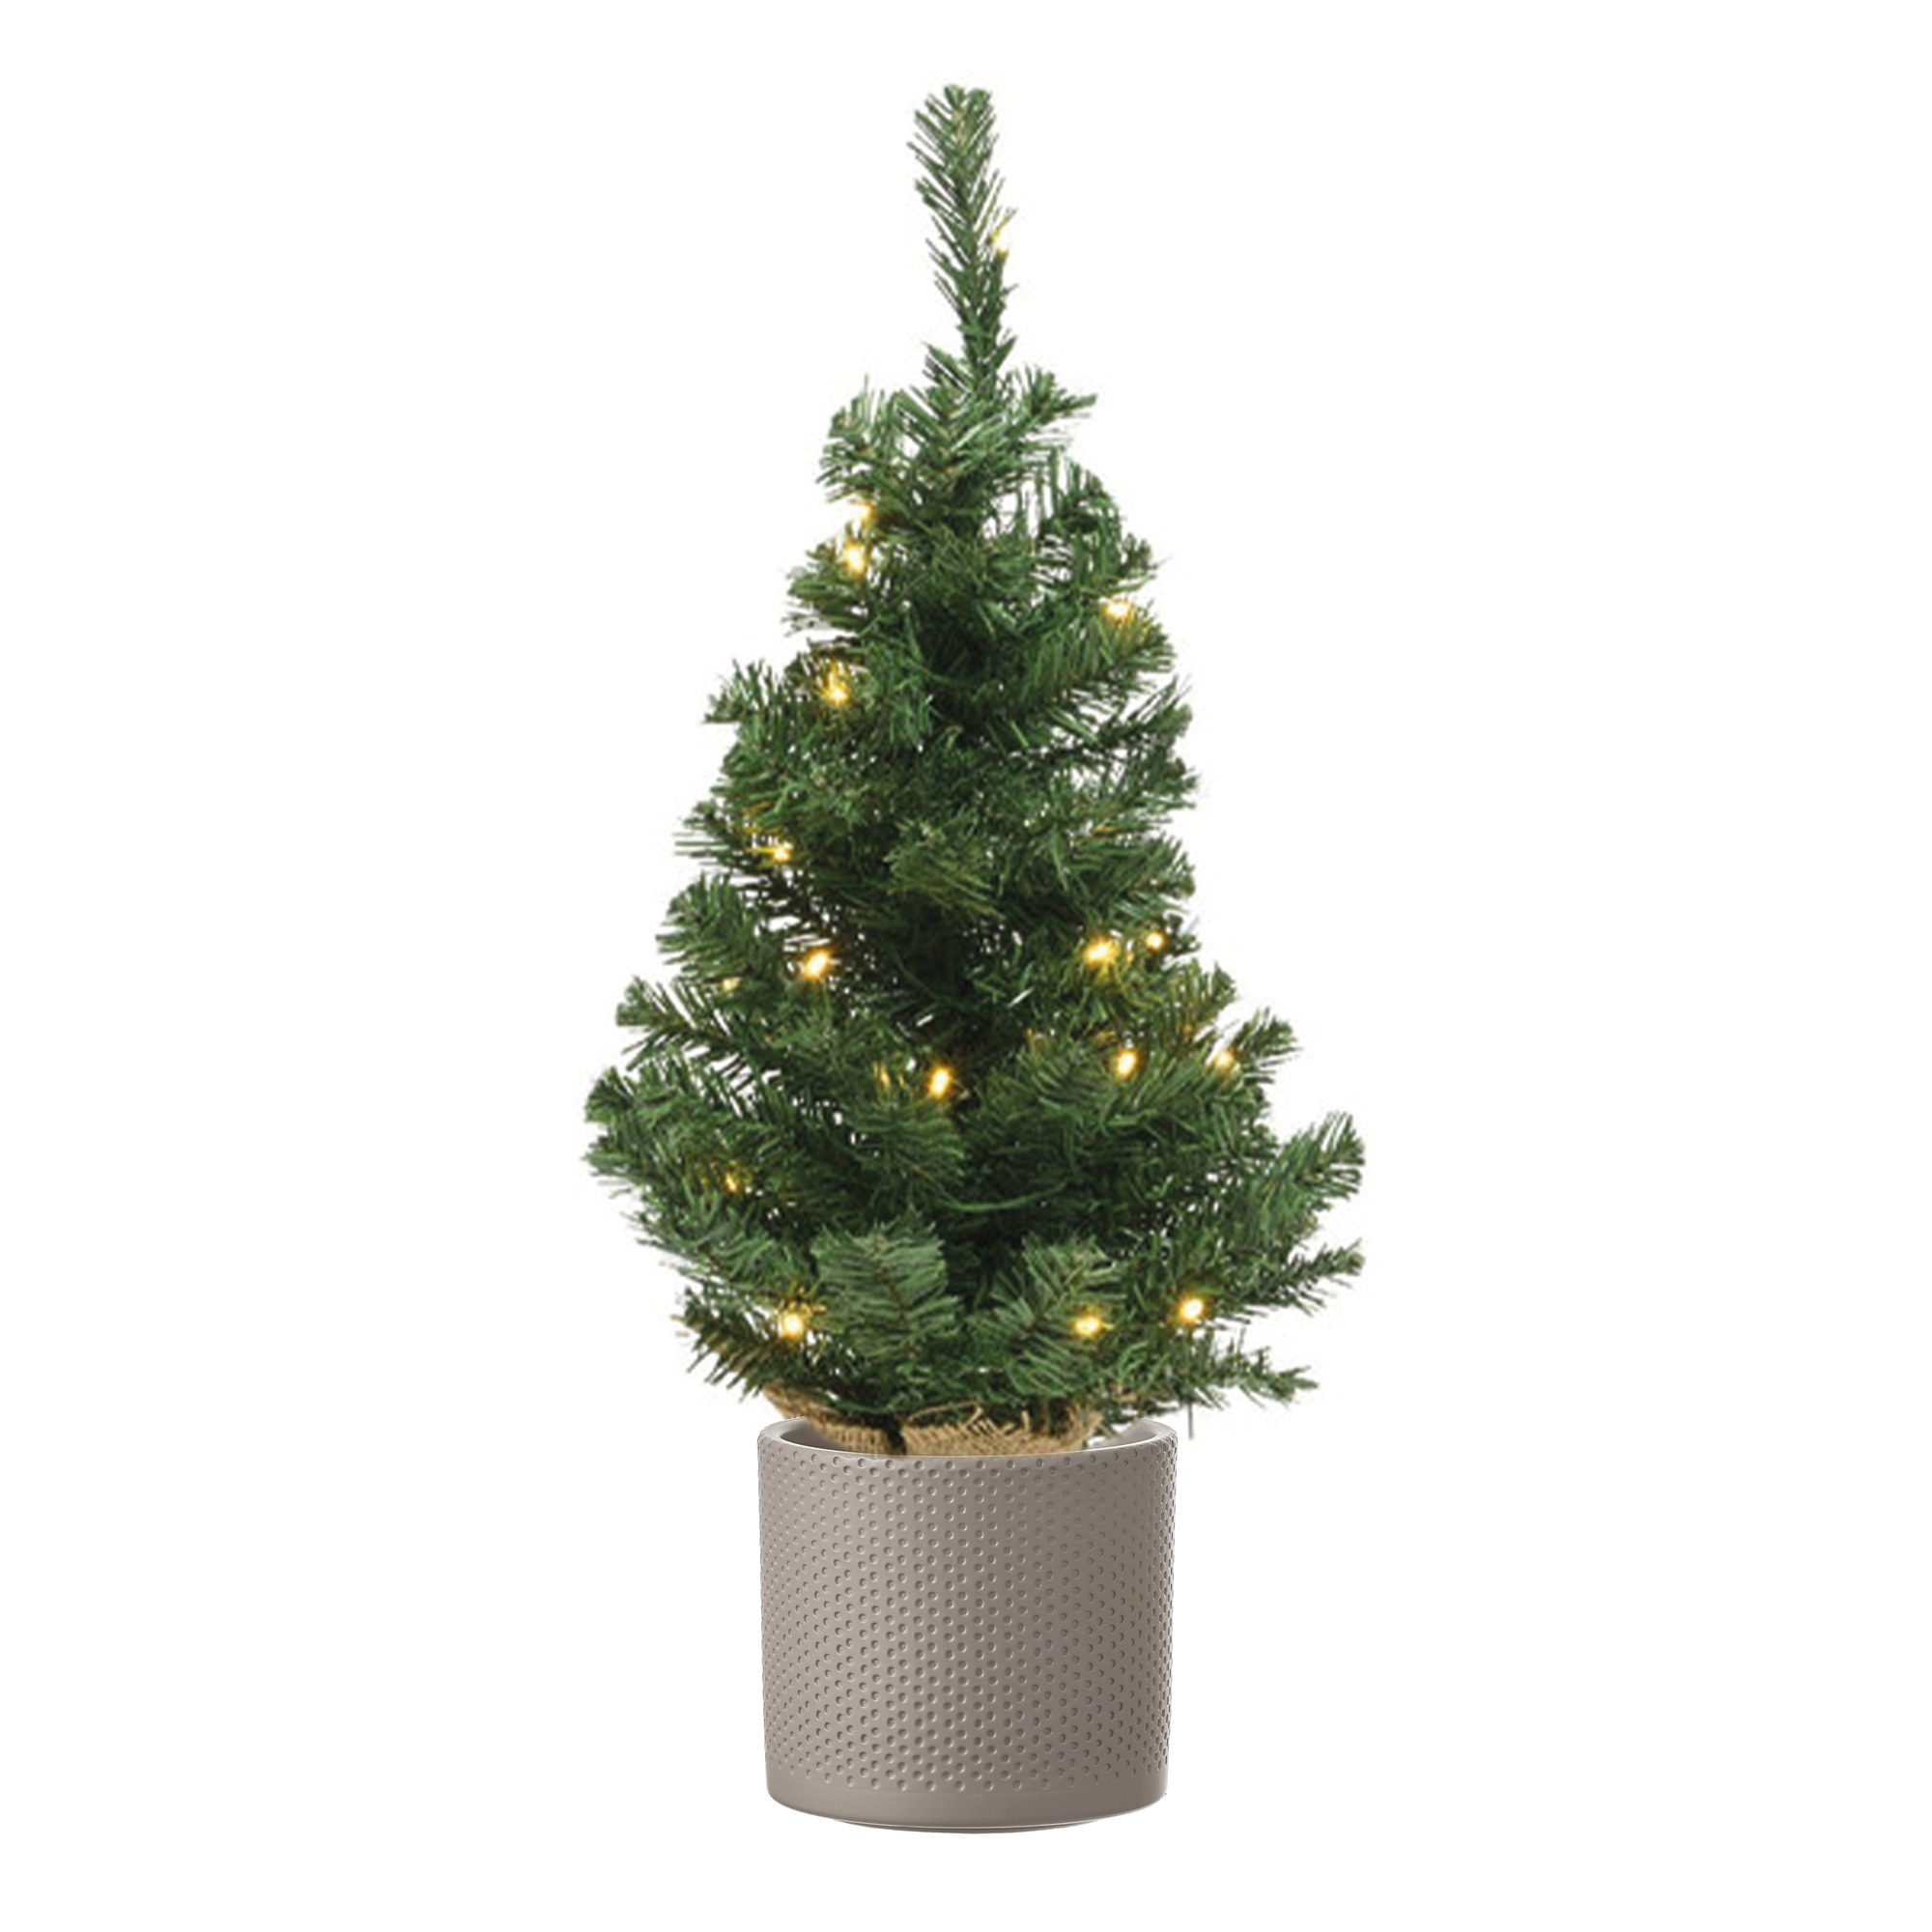 Volle mini kerstboom groen in jute zak met verlichting 60 cm en taupe pot